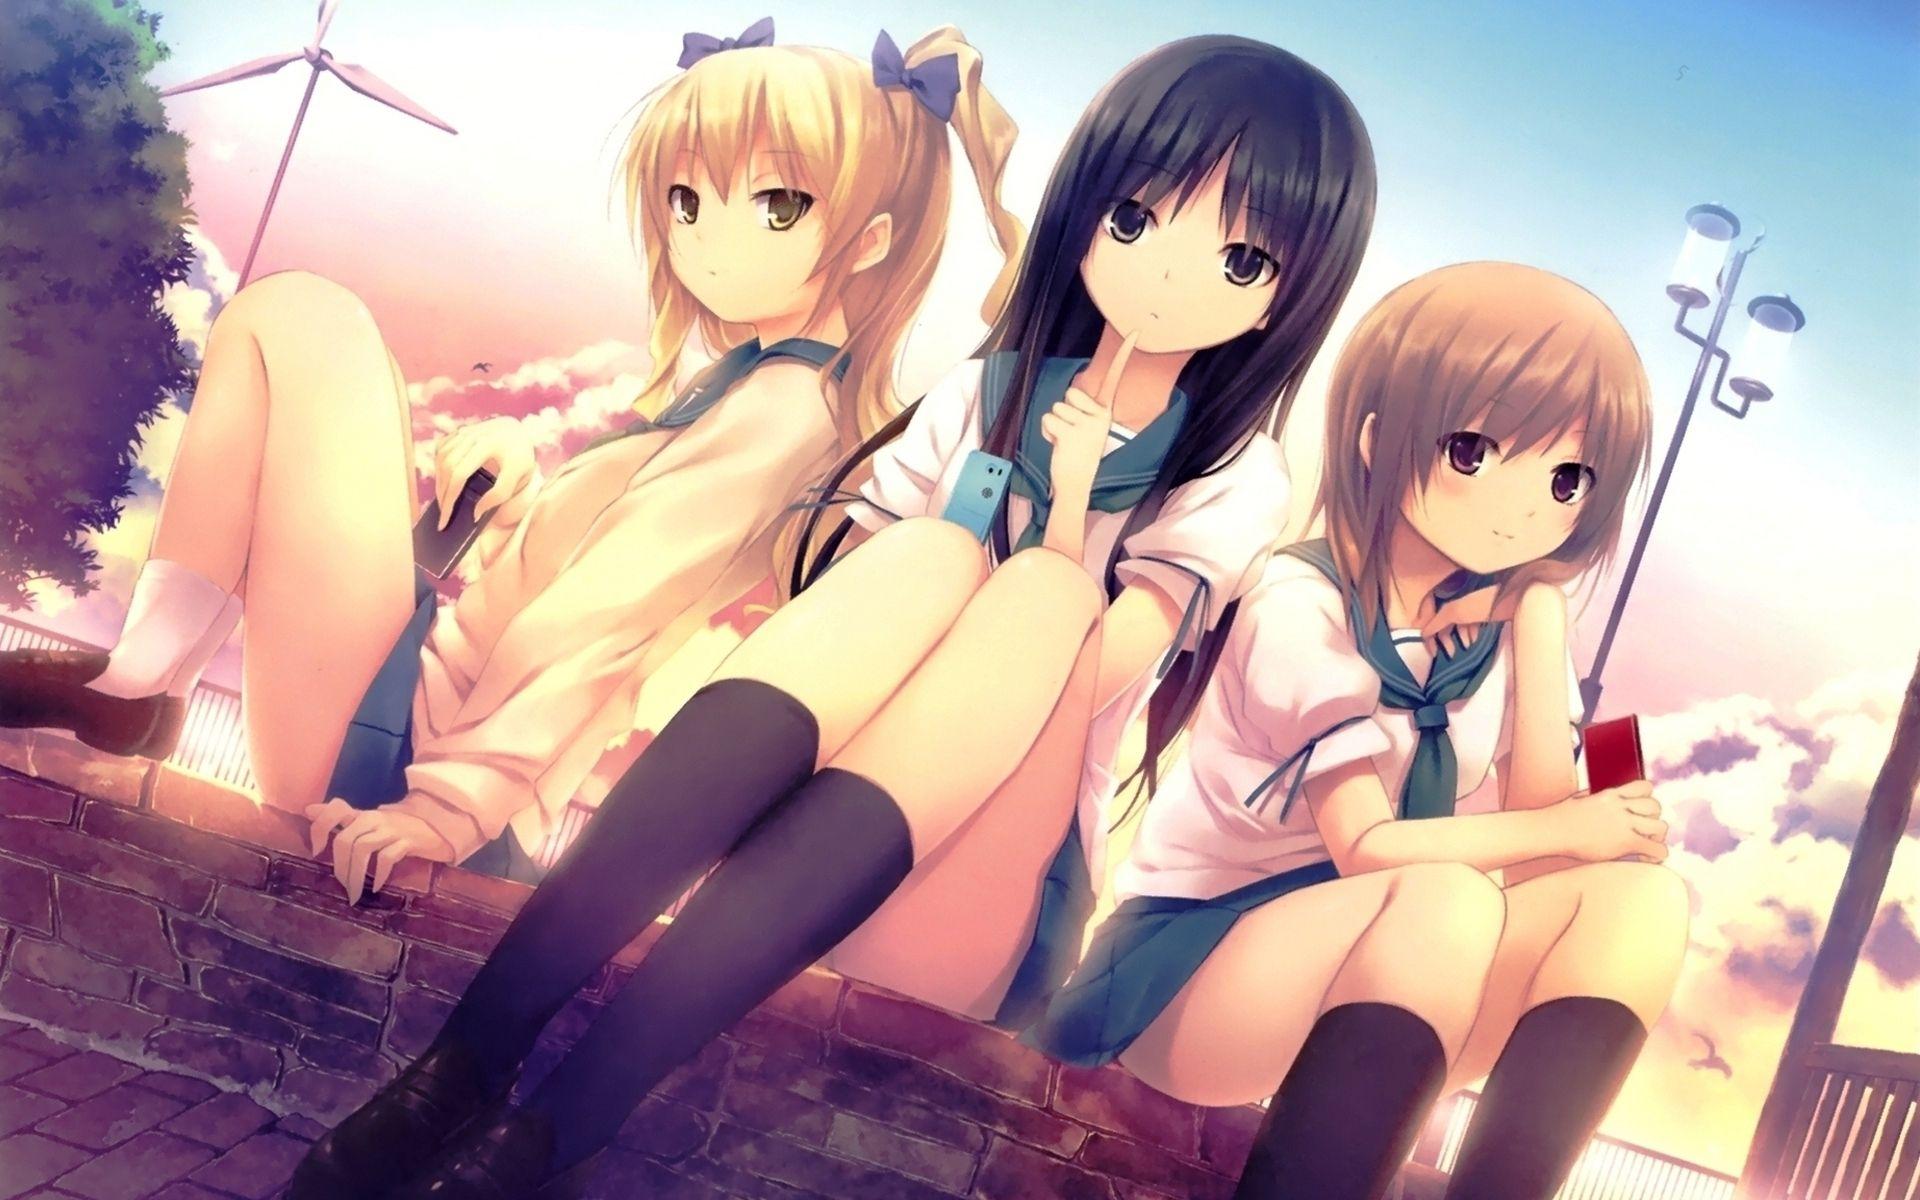 3 Anime Girls My Friends by xbluexeyextiger on DeviantArt